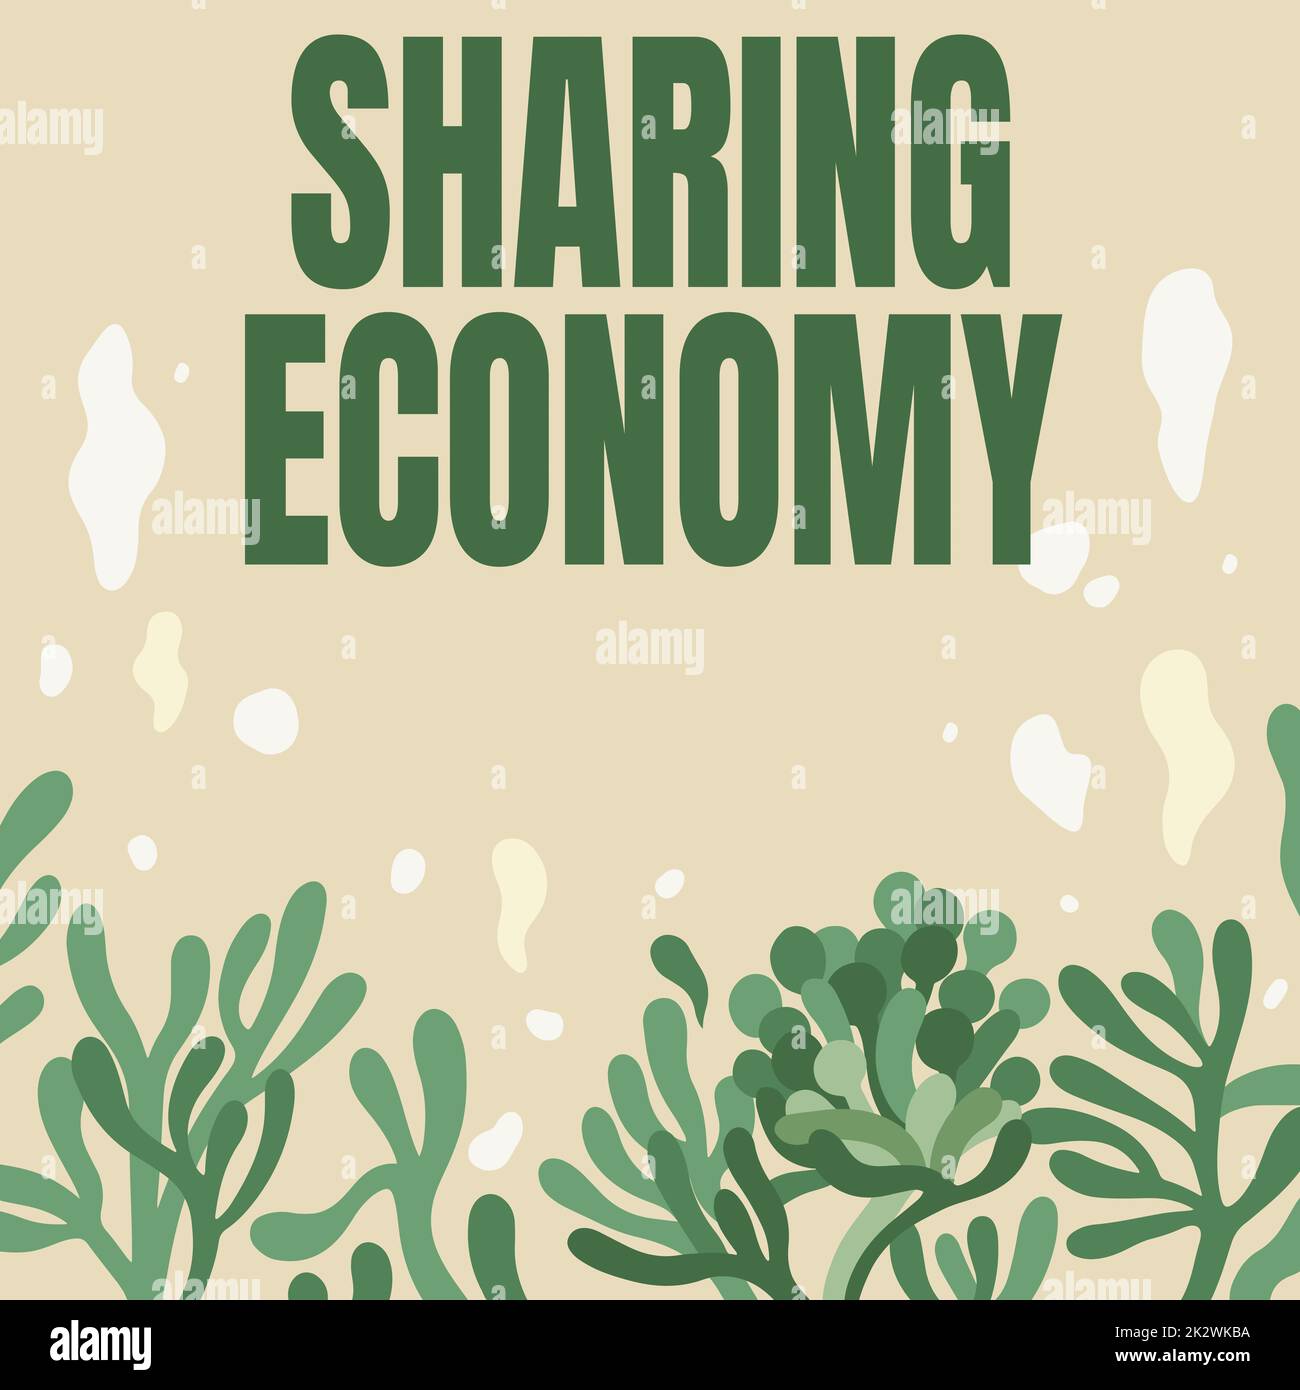 Konzeptionelle Darstellung Sharing Economy. Wort für Wirtschaftsmodell basiert auf Zugang zu Waren Rahmen dekoriert mit farbenfrohen Blumen und Laub harmonisch angeordnet. Stockfoto